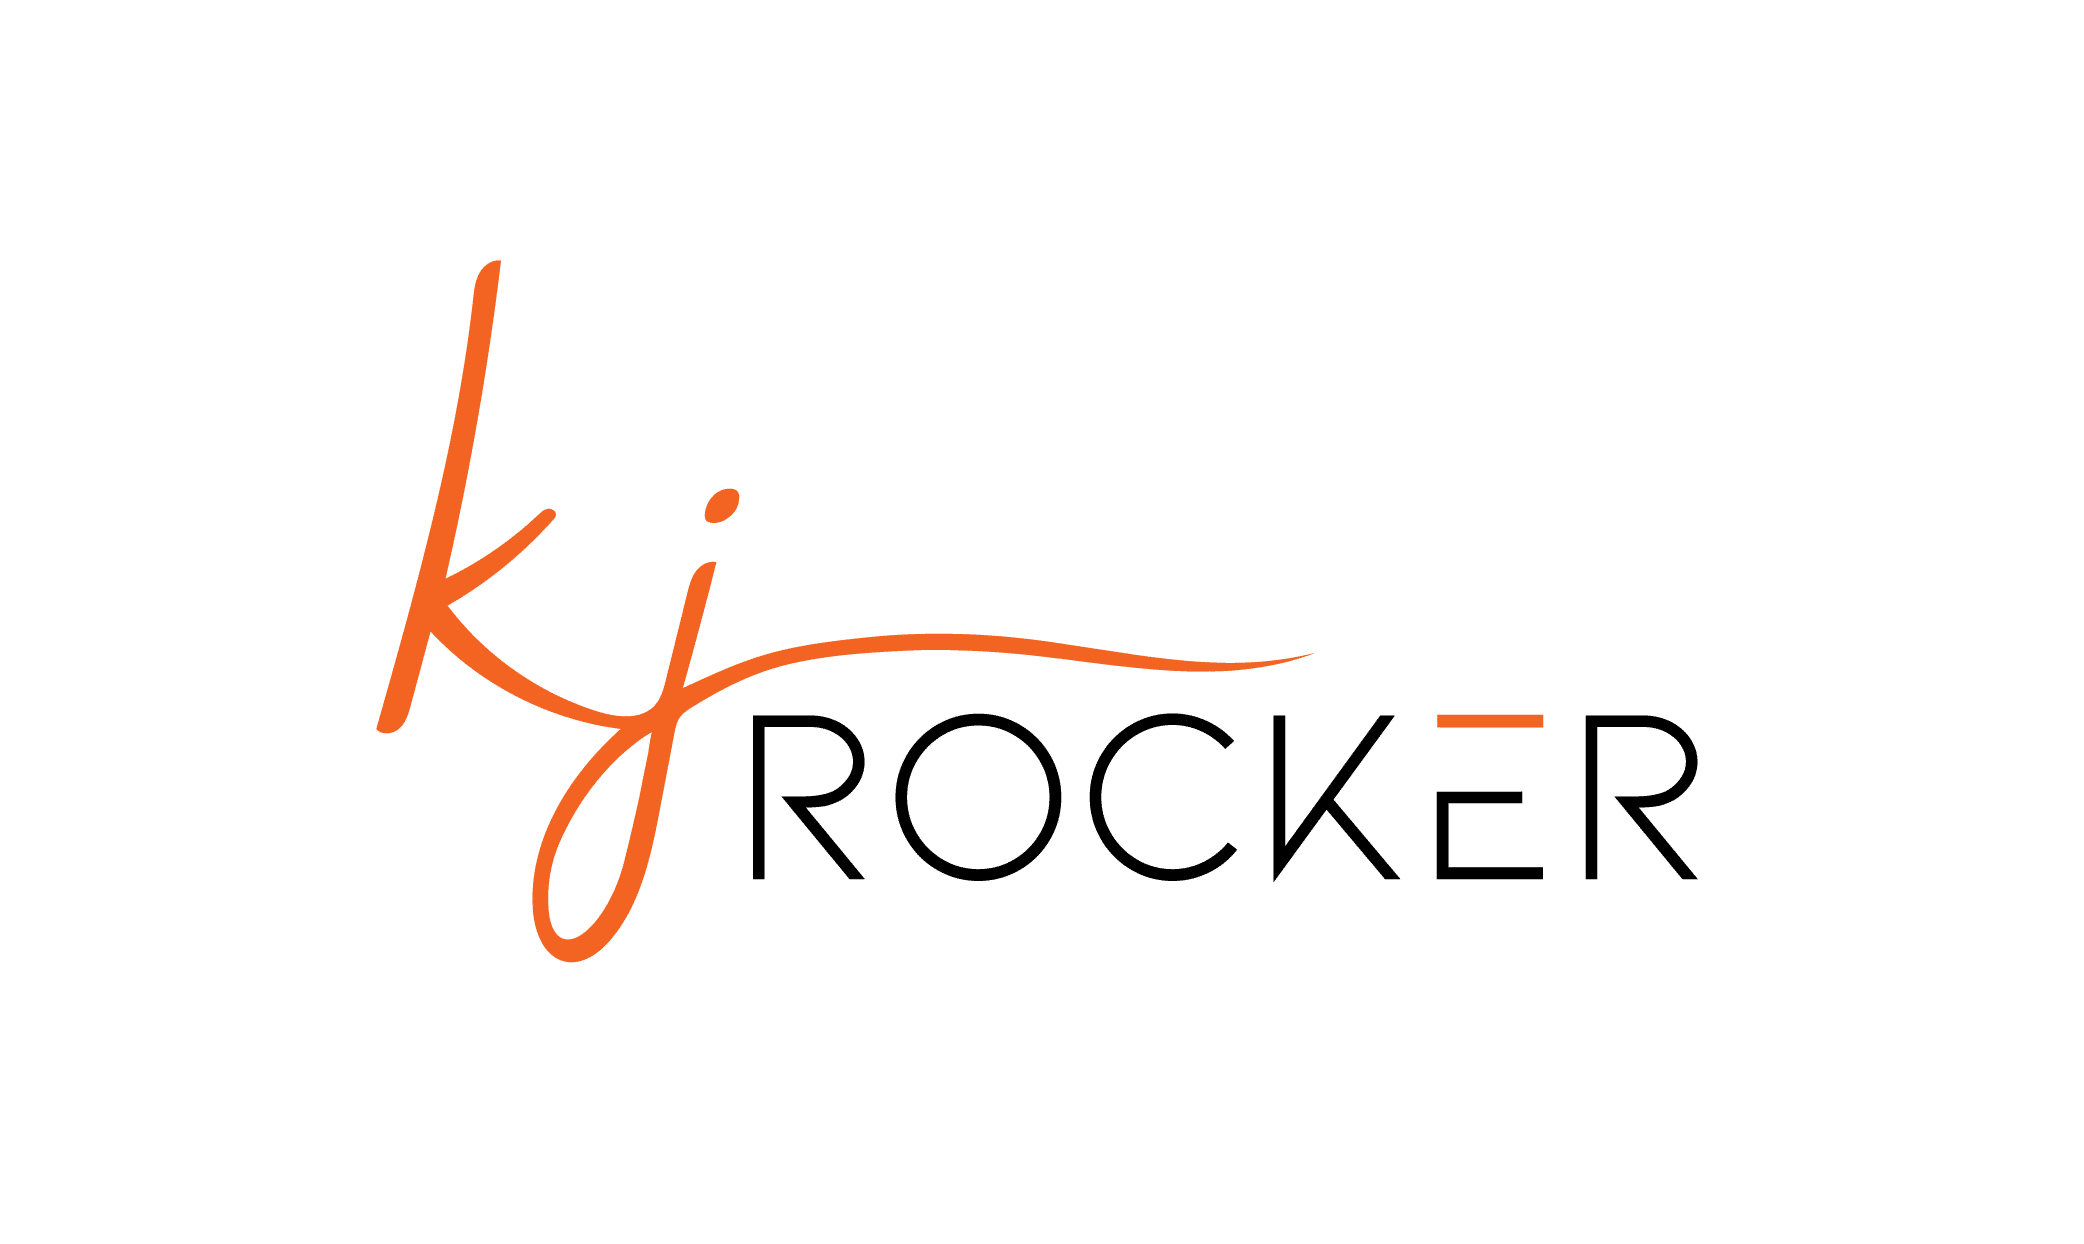 kj Rocker final logo 01